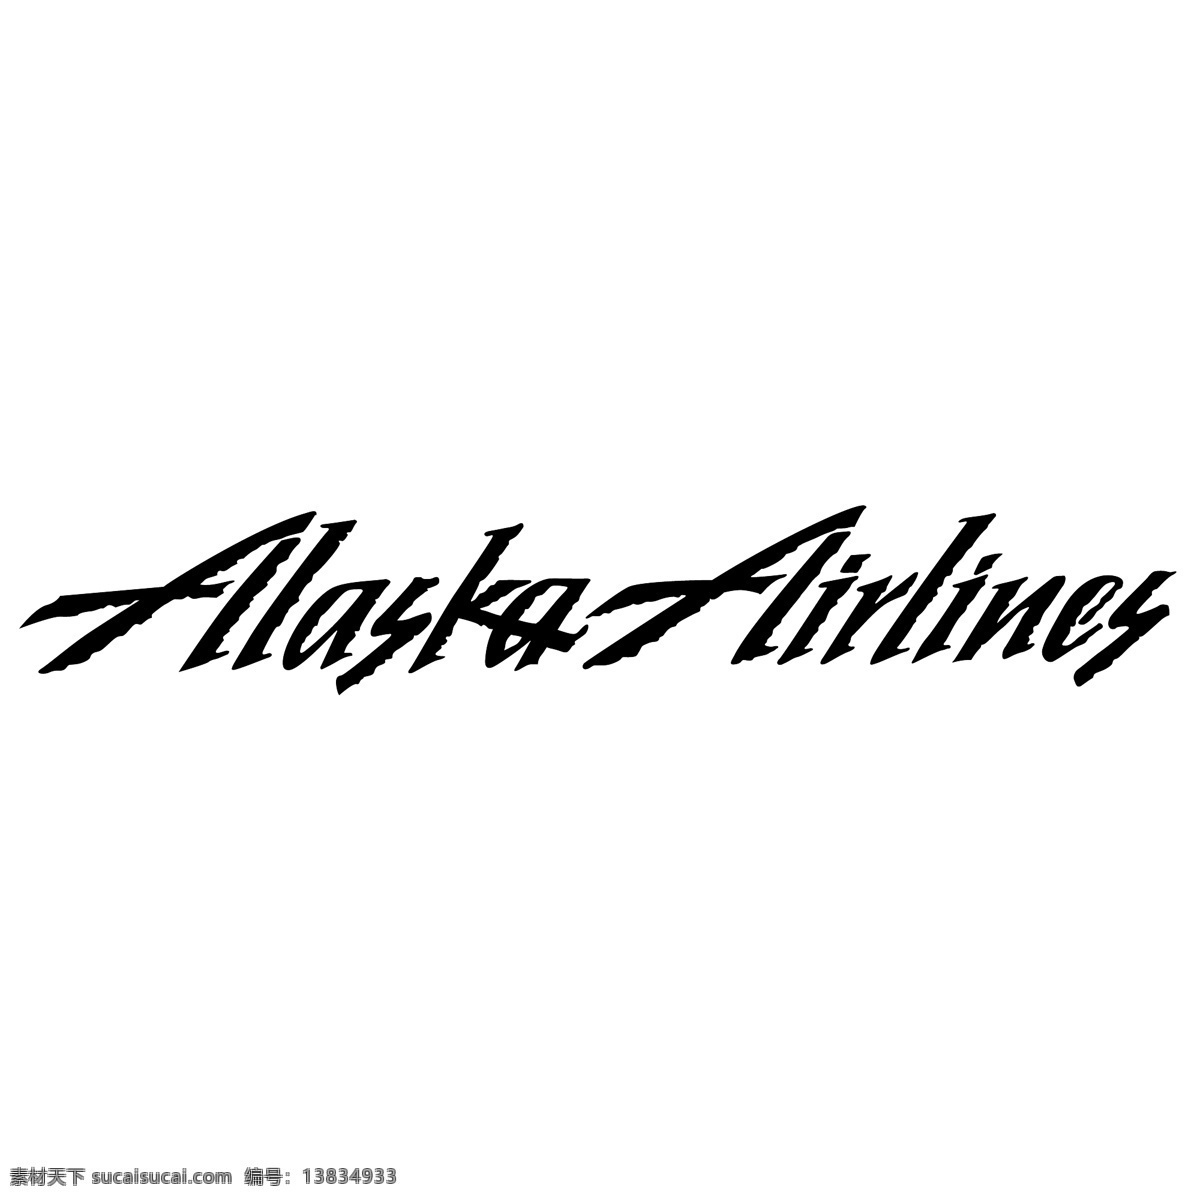 阿拉斯加航空公司 标识 公司 免费 品牌 品牌标识 商标 矢量标志下载 免费矢量标识 矢量 psd源文件 logo设计